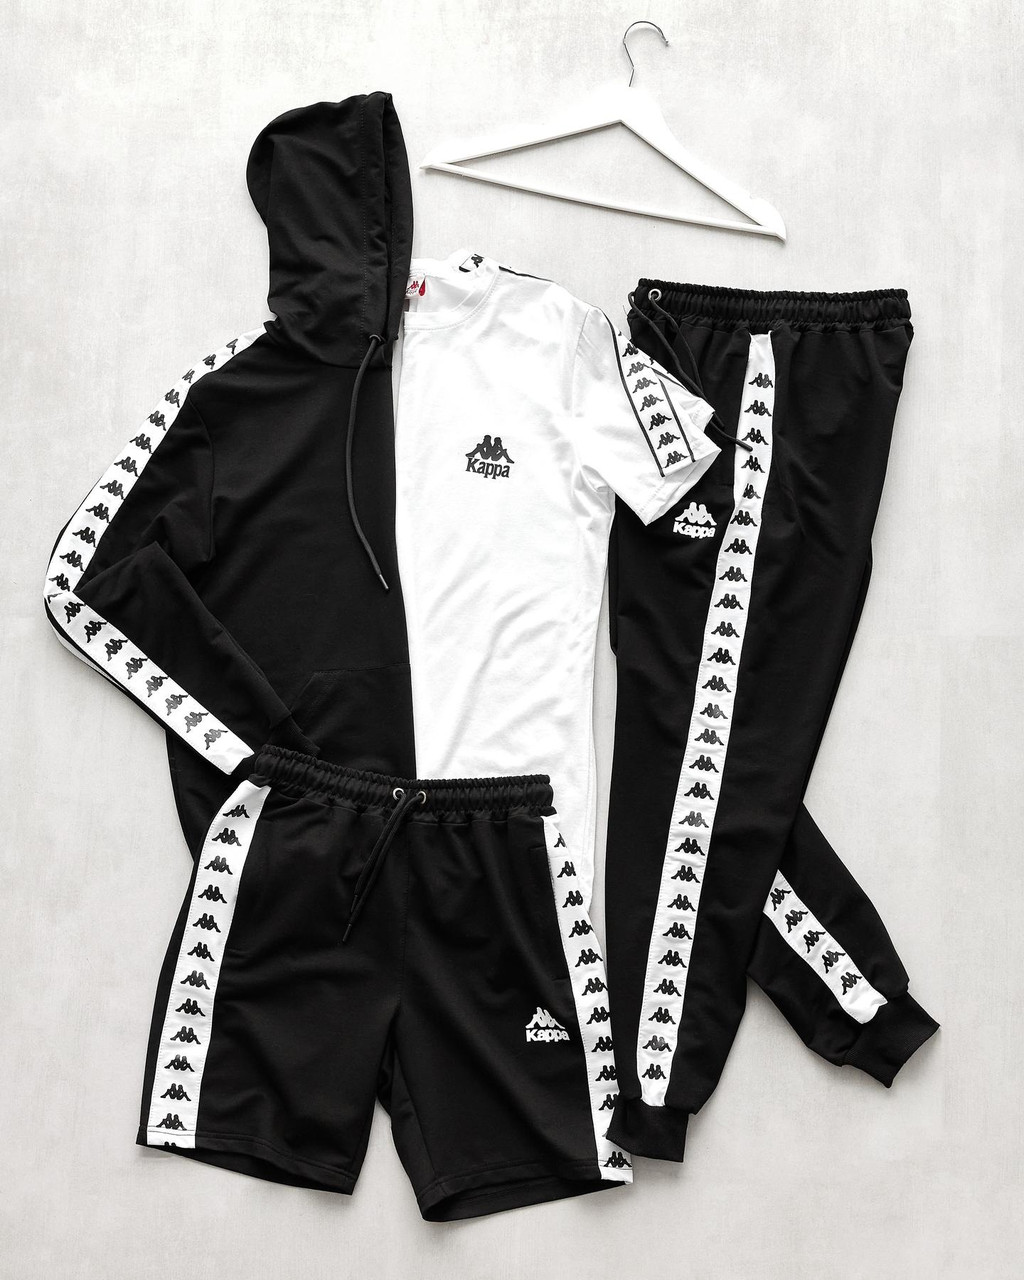 Чоловічий спортивний костюм Kappa + Футболка + Шорти чорний Каппа з лампасами